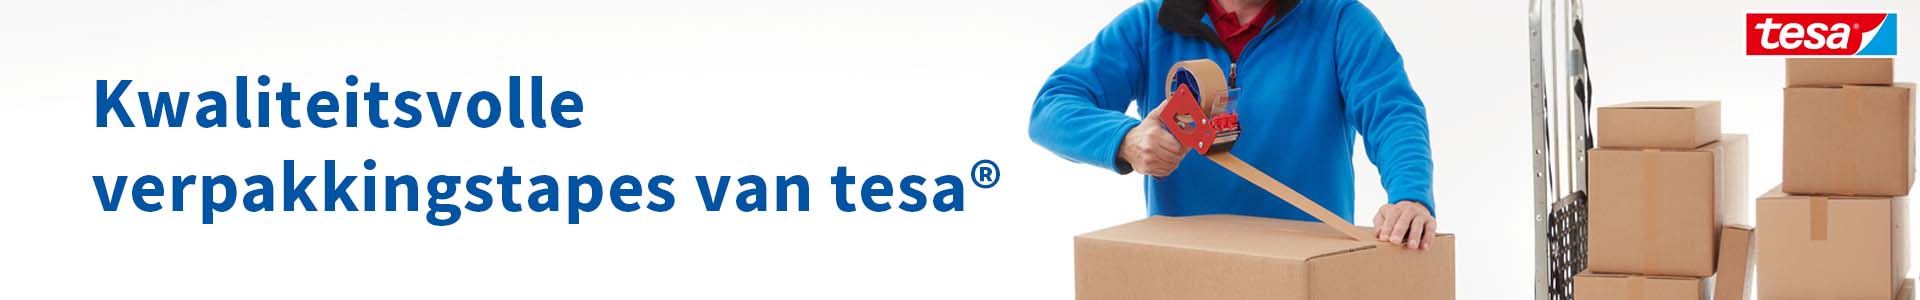 Kwaliteitsvolle verpakkingstapes van tesa®